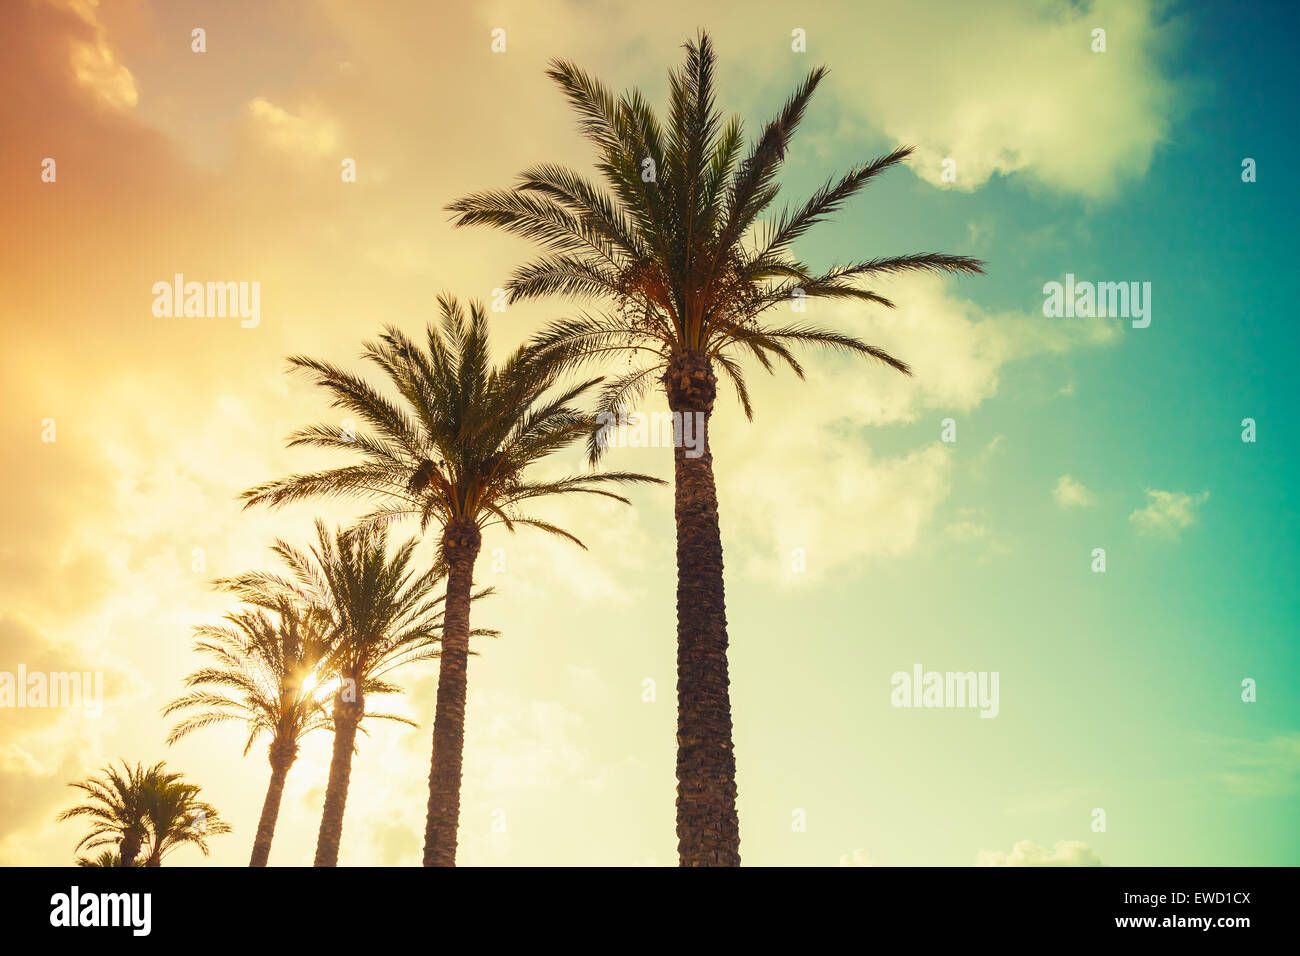 Palmiers et soleil brillant sur fond de ciel nuageux. Vintage style. Photo avec des tons colorés effet filtre instagram gradient Banque D'Images